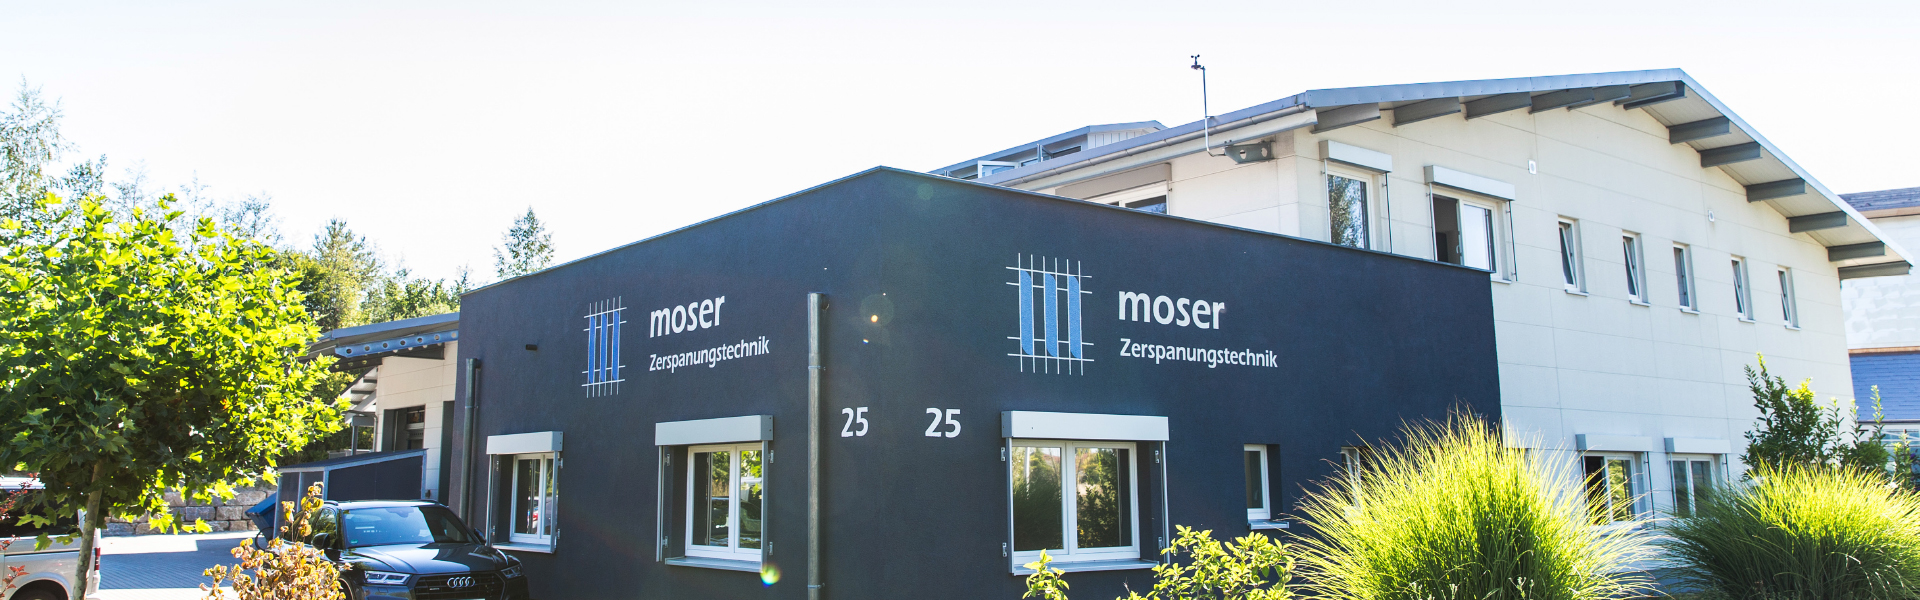 Moser Zerspanungstechnik in Kressbronn am Bodensee